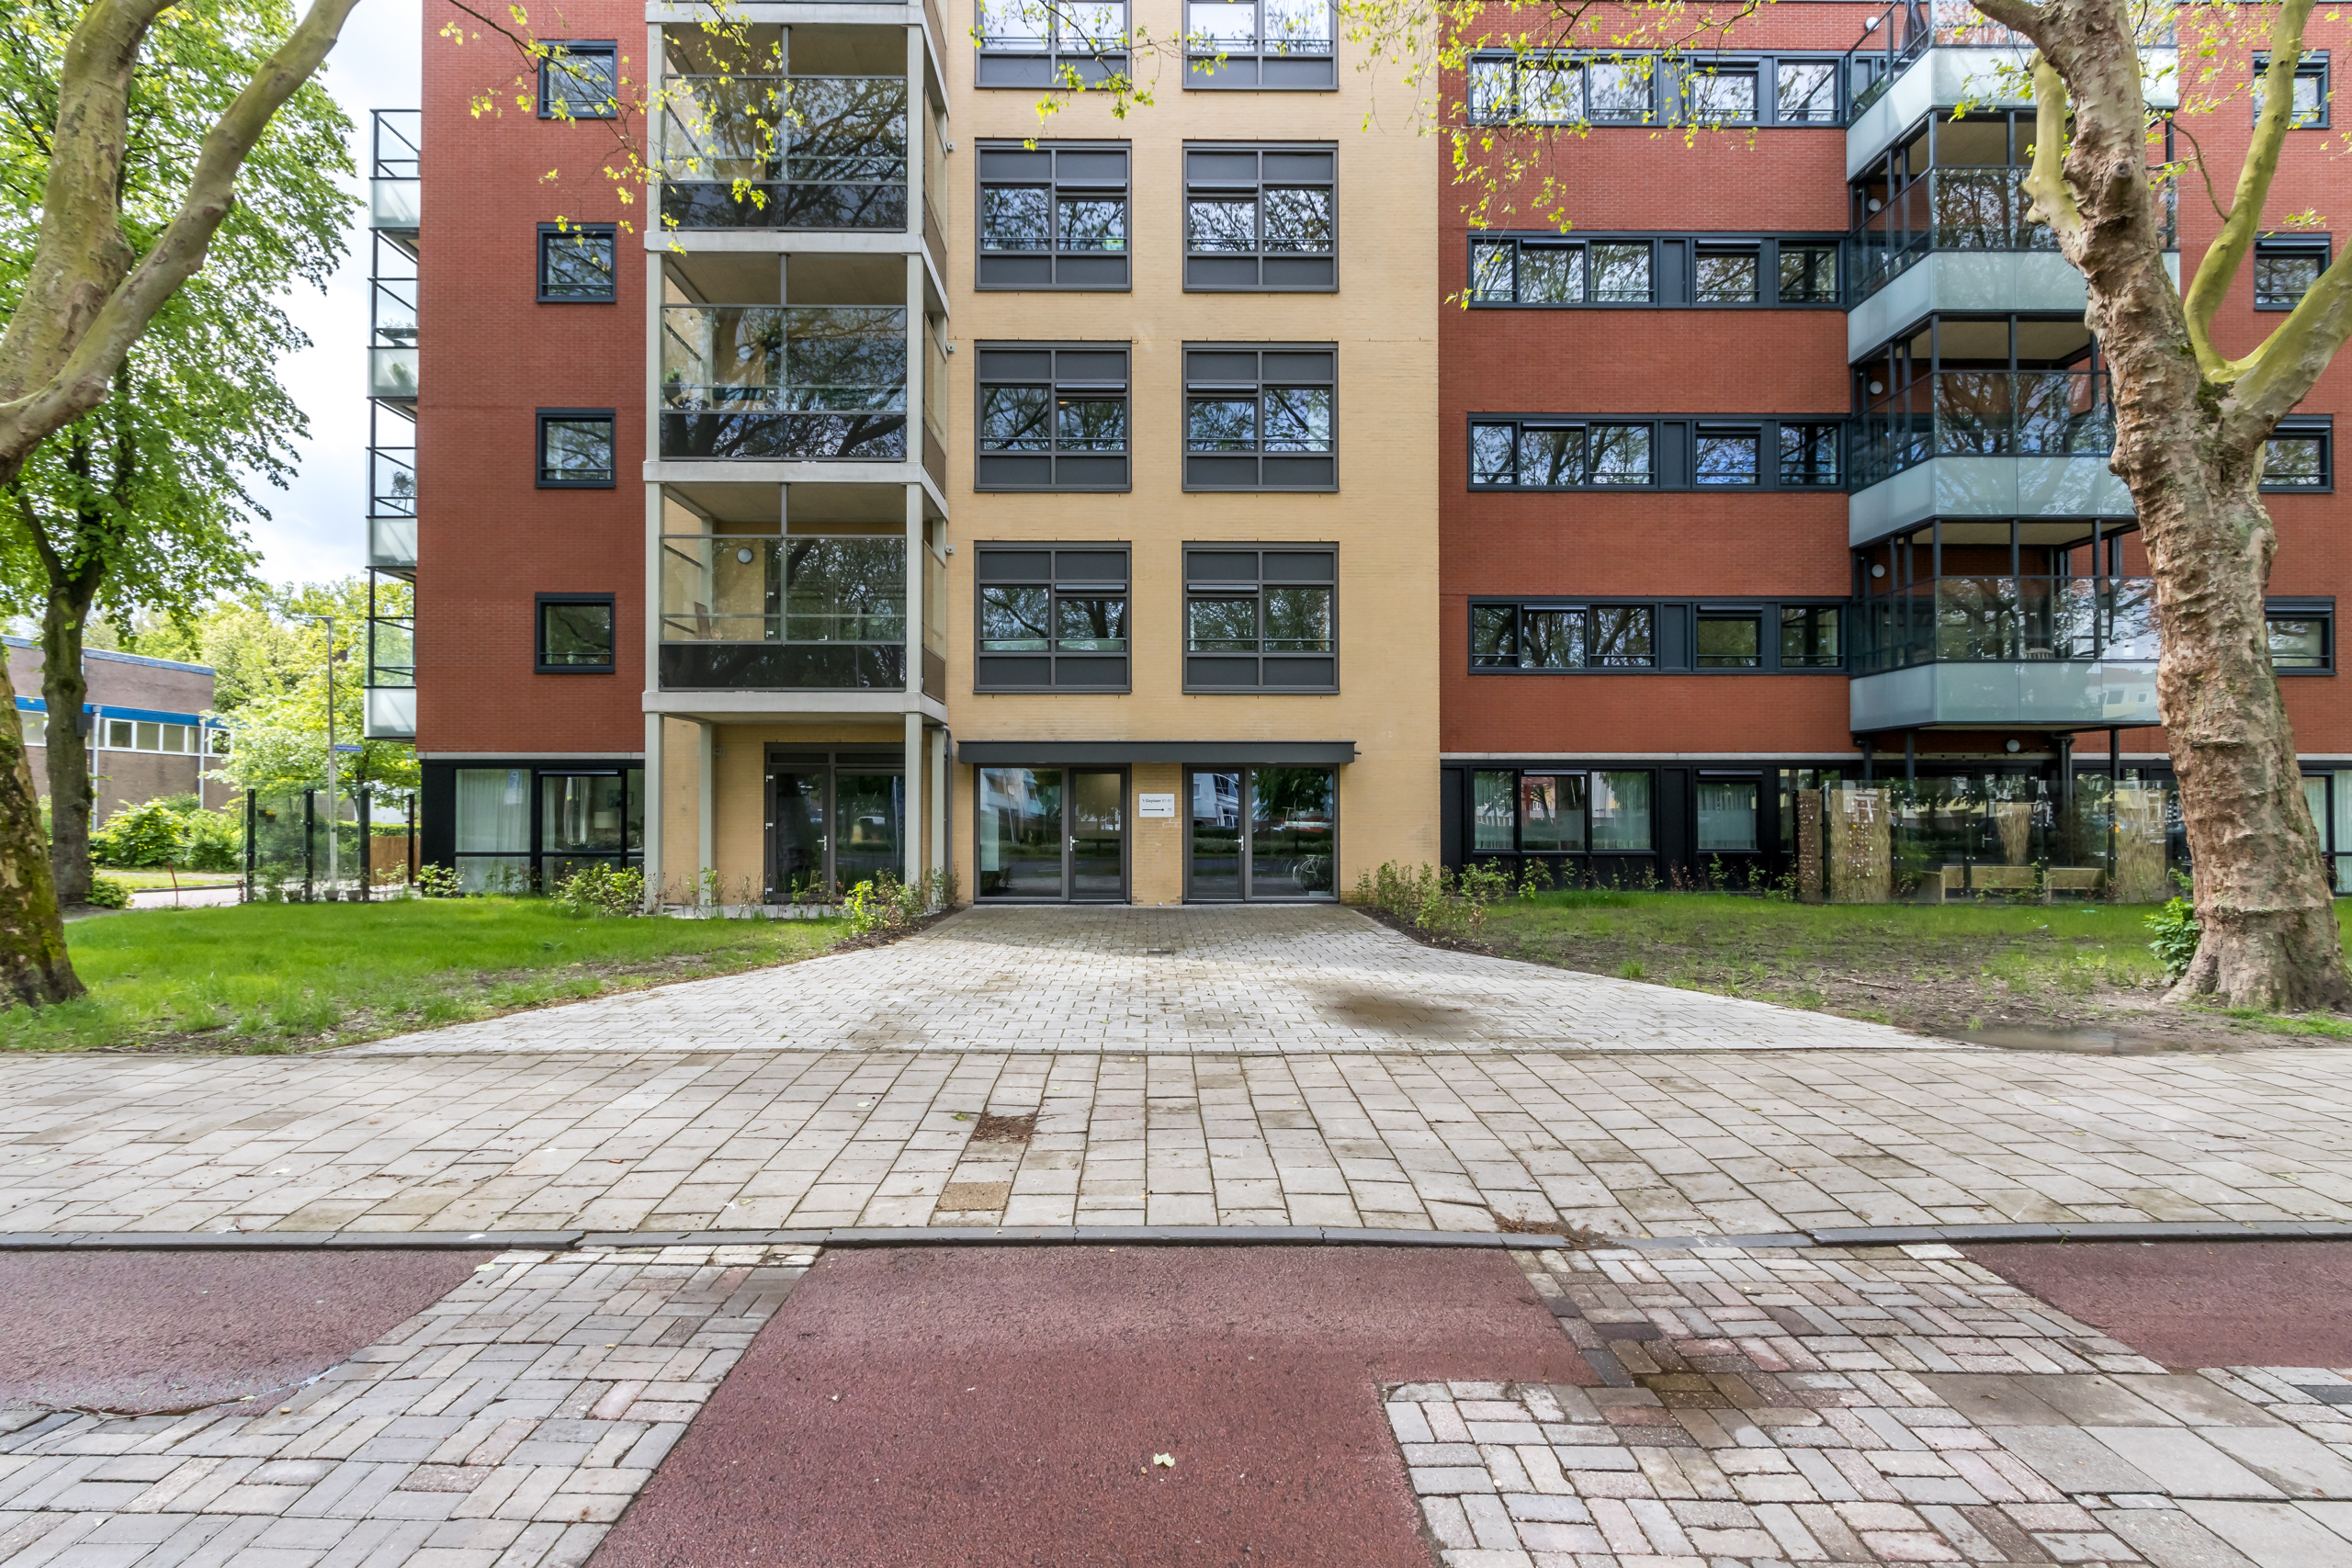 Bekijk foto 1/10 van apartment in Utrecht